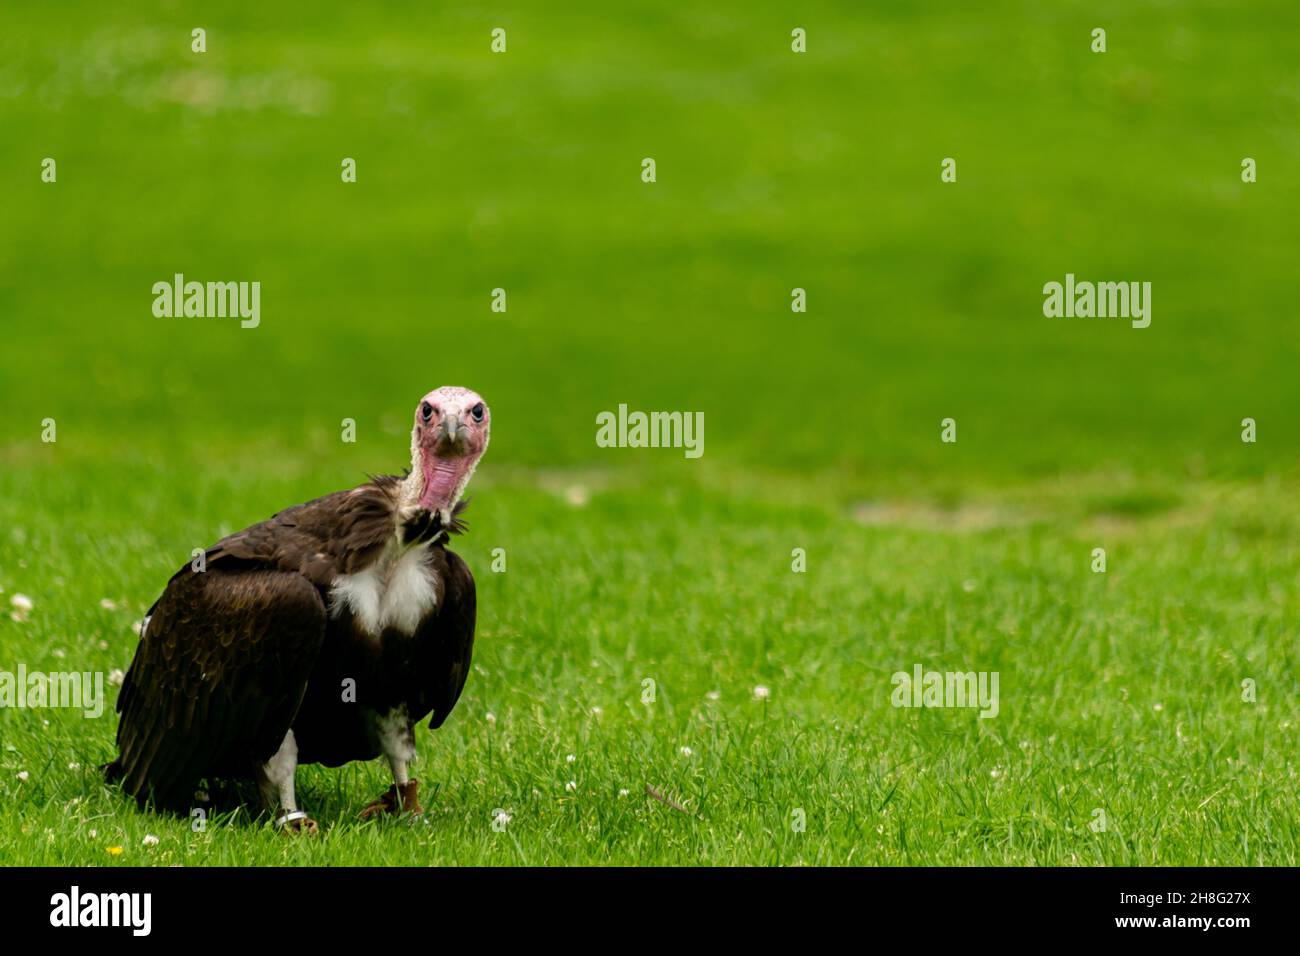 Oiseau vautour à capuchon assis sur une herbe regardant directement à la caméra, vue du visage d'un oiseau de proie marchant sur le sol, vautour tenu captif et entraîné Banque D'Images